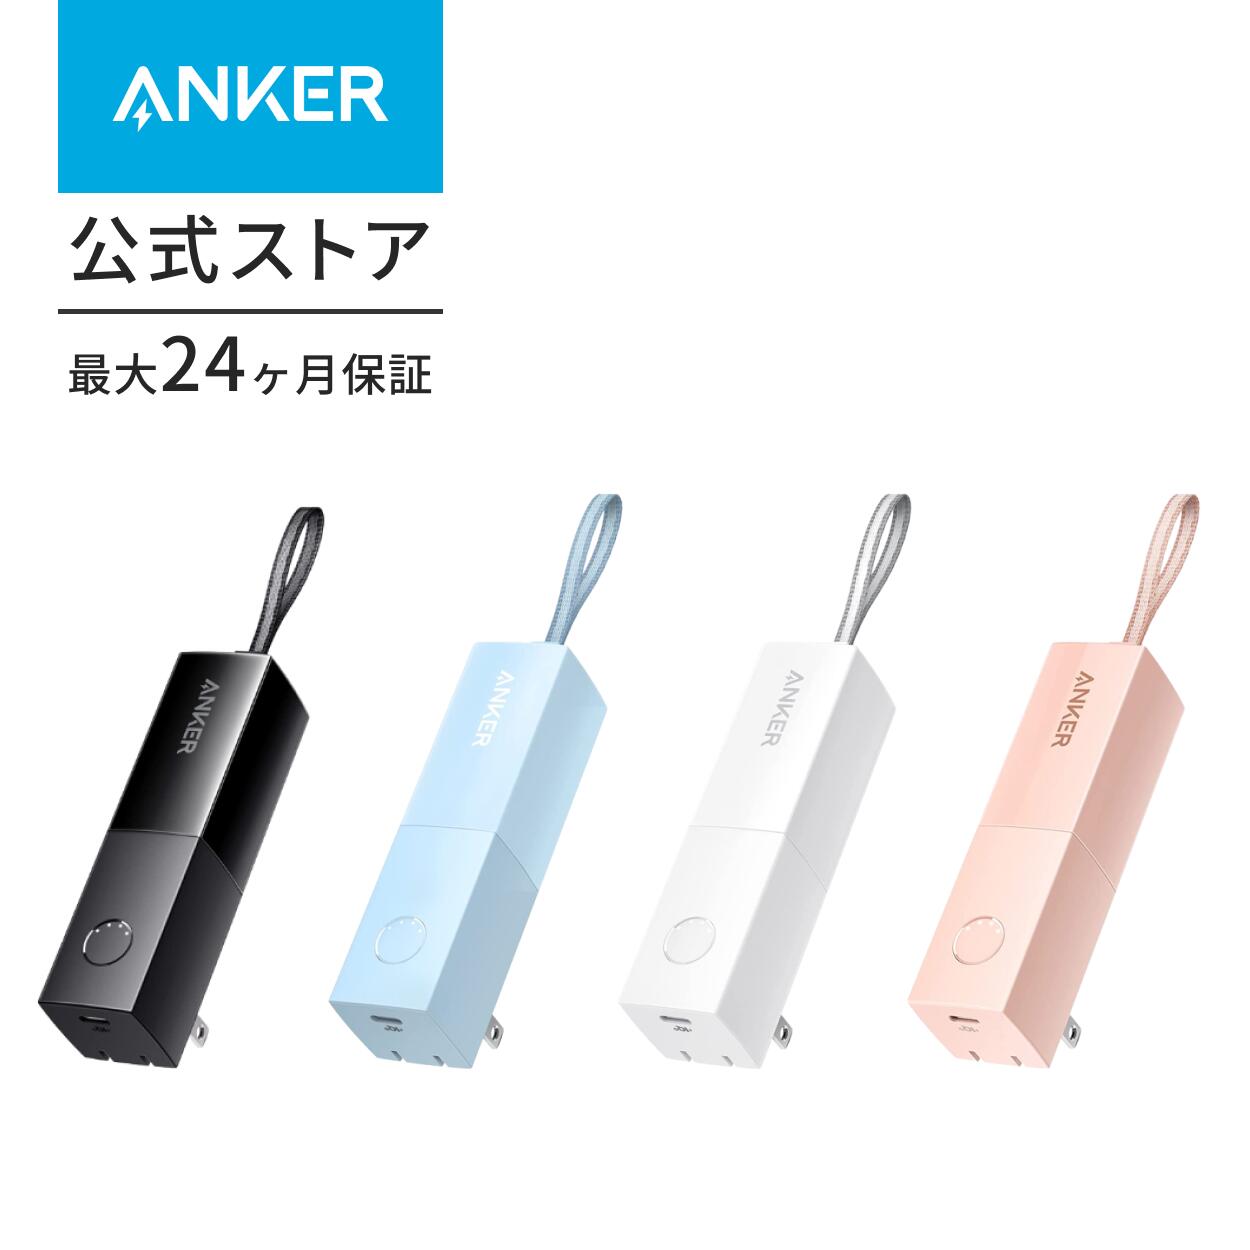 【一部あす楽対応】Anker 511 Power Bank 